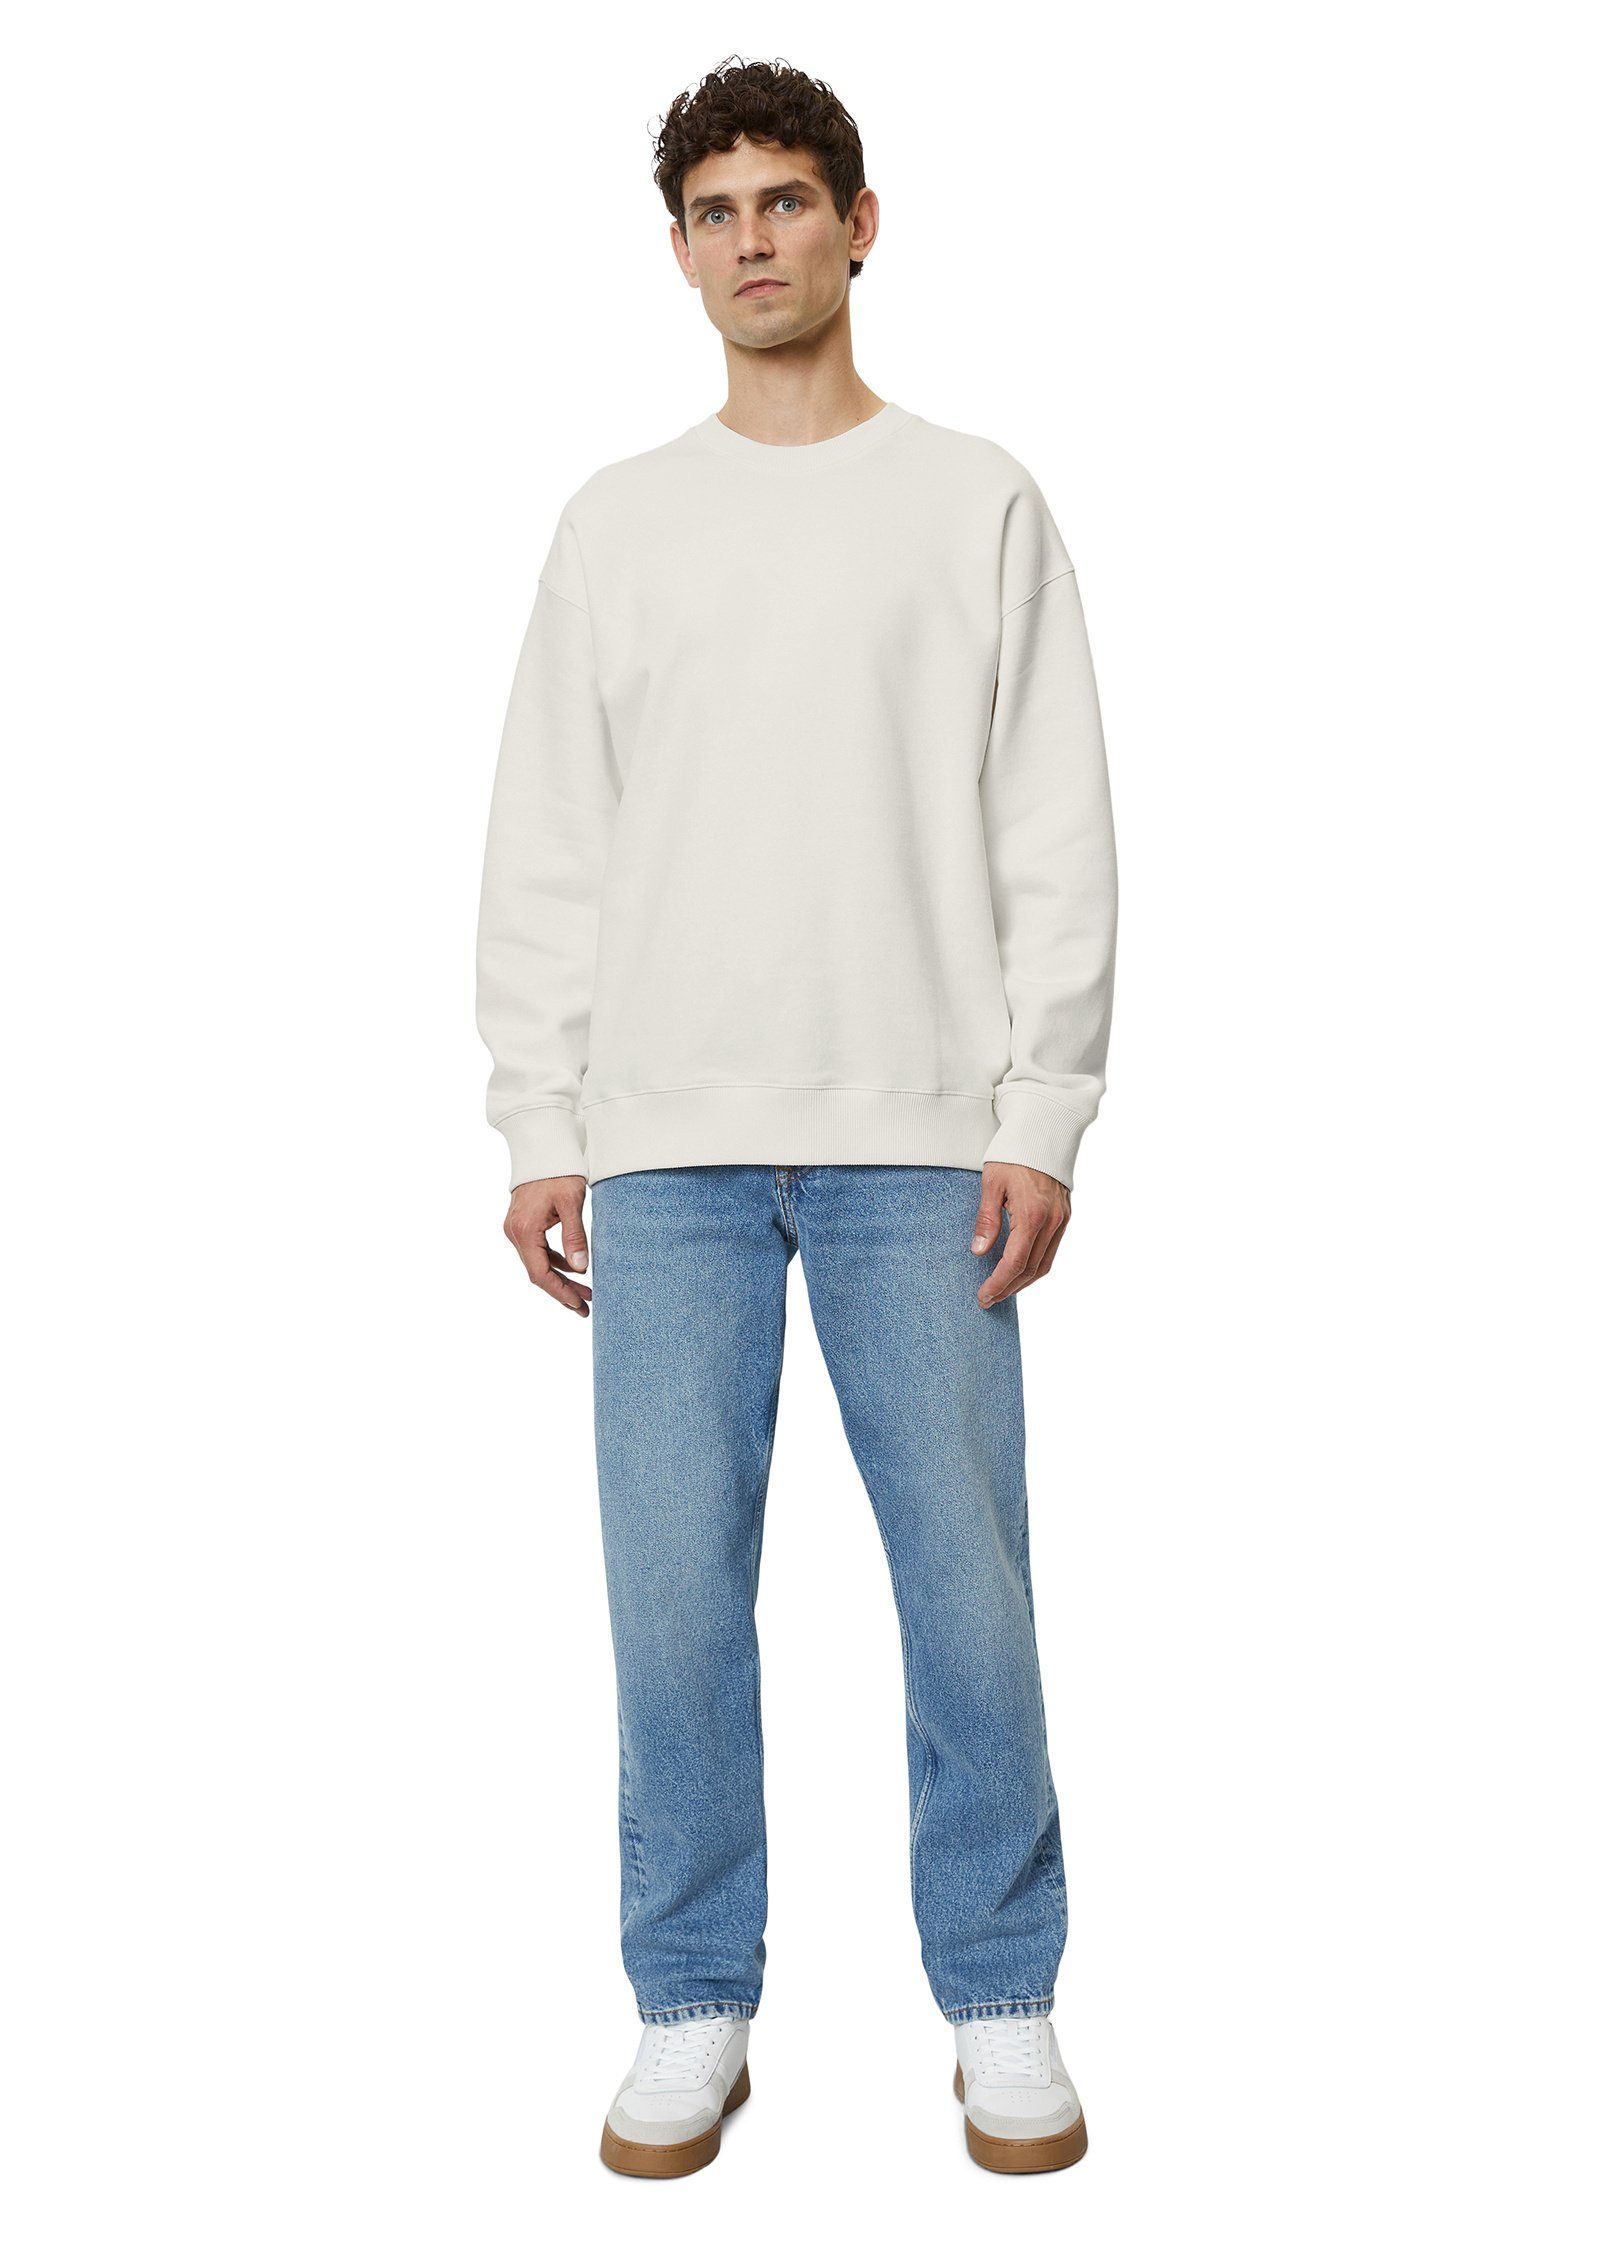 O'Polo Marc Bio-Baumwolle weiß aus reiner Sweatshirt